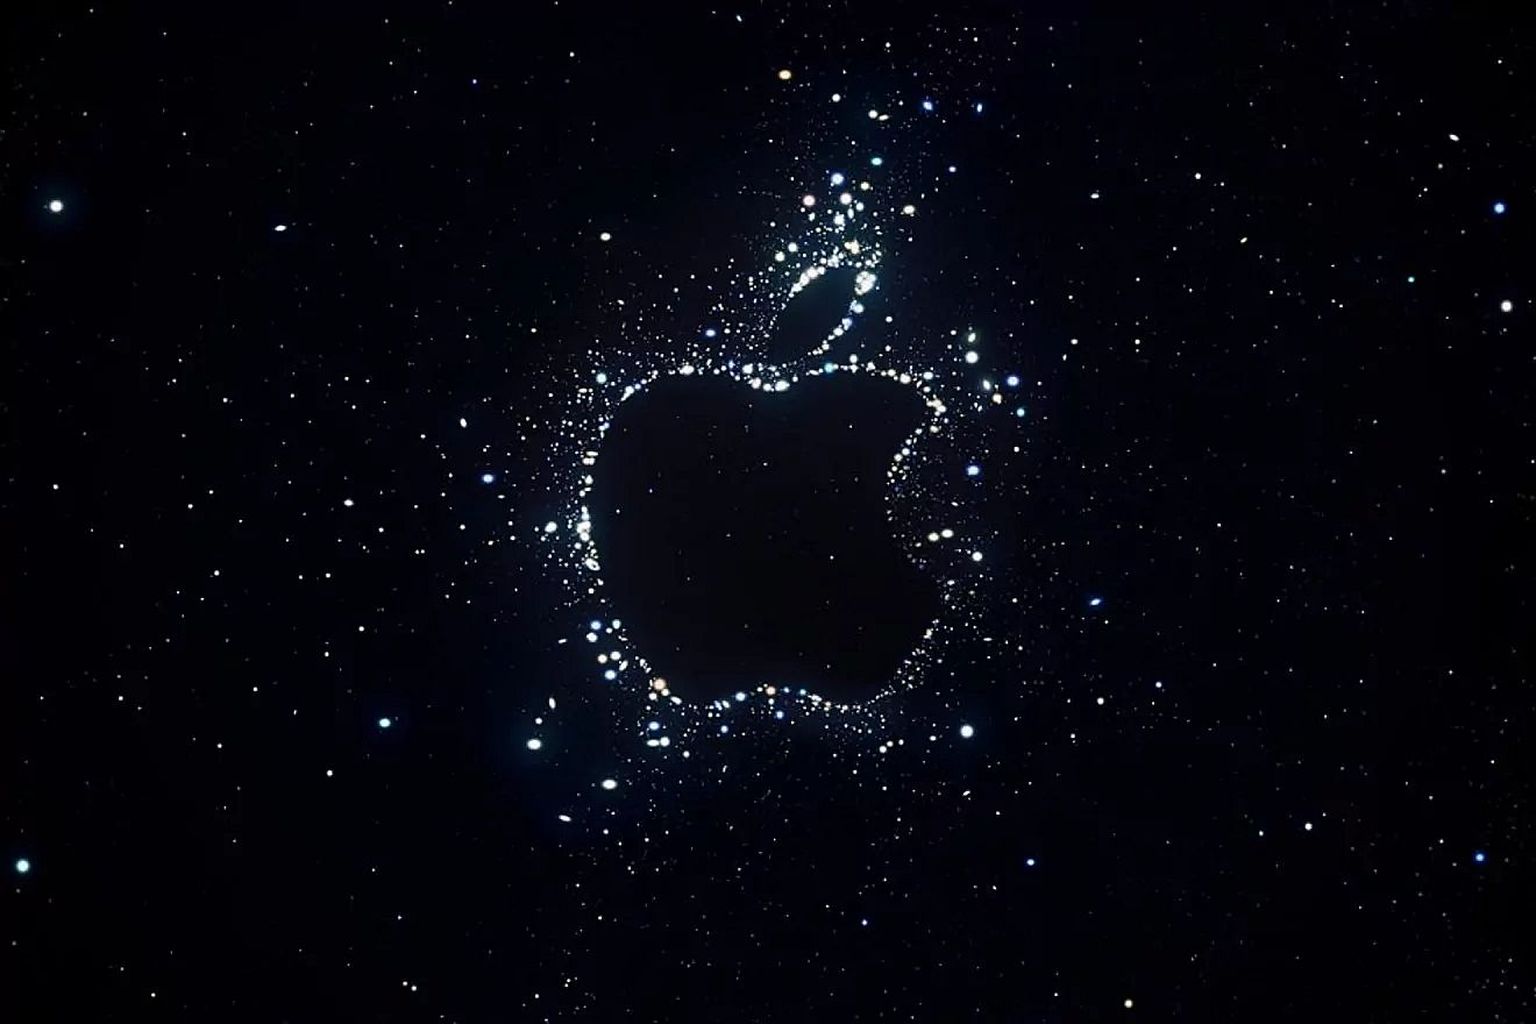 Apple vihjab kosmilise plakatiga, et uudiseid võib tulla ka satelliitside valdkonnast.